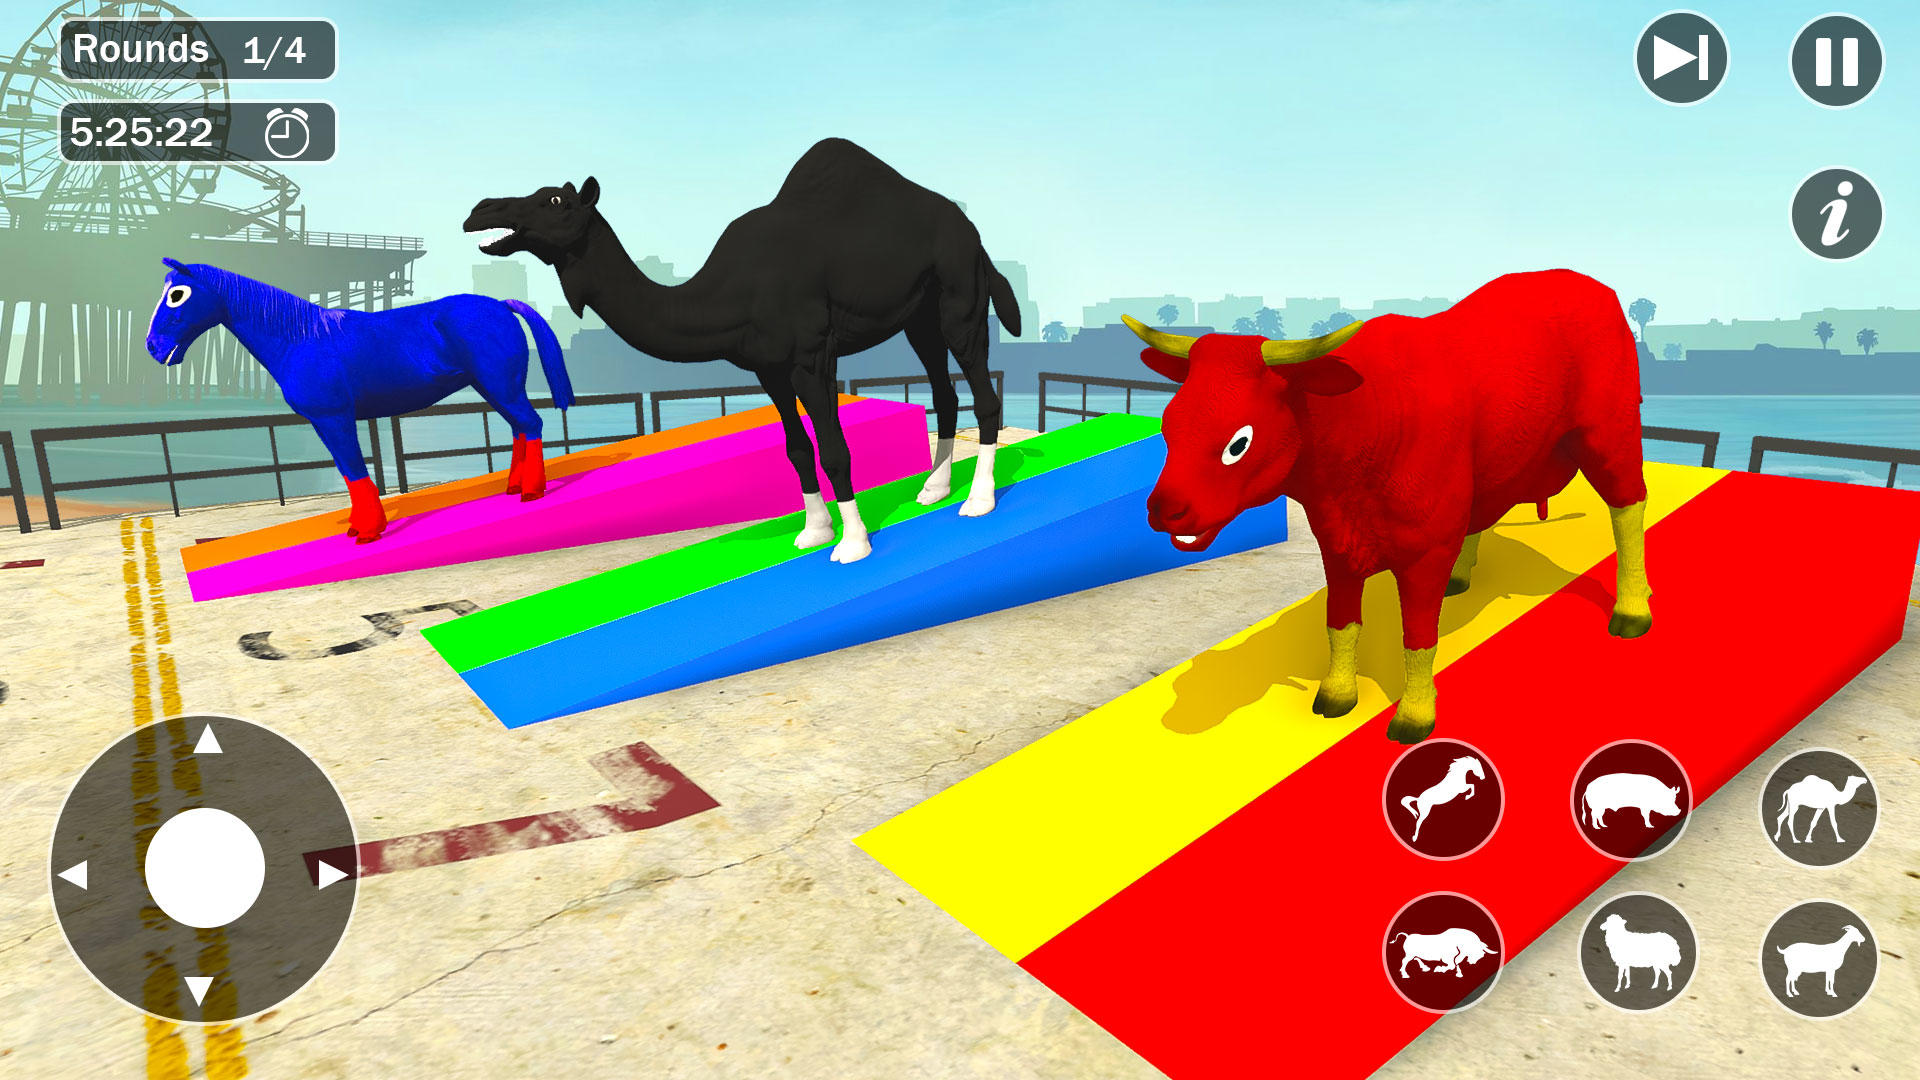 Screenshot 1 of GT Animal 3D: ความท้าทายในการแข่งรถ 15.0